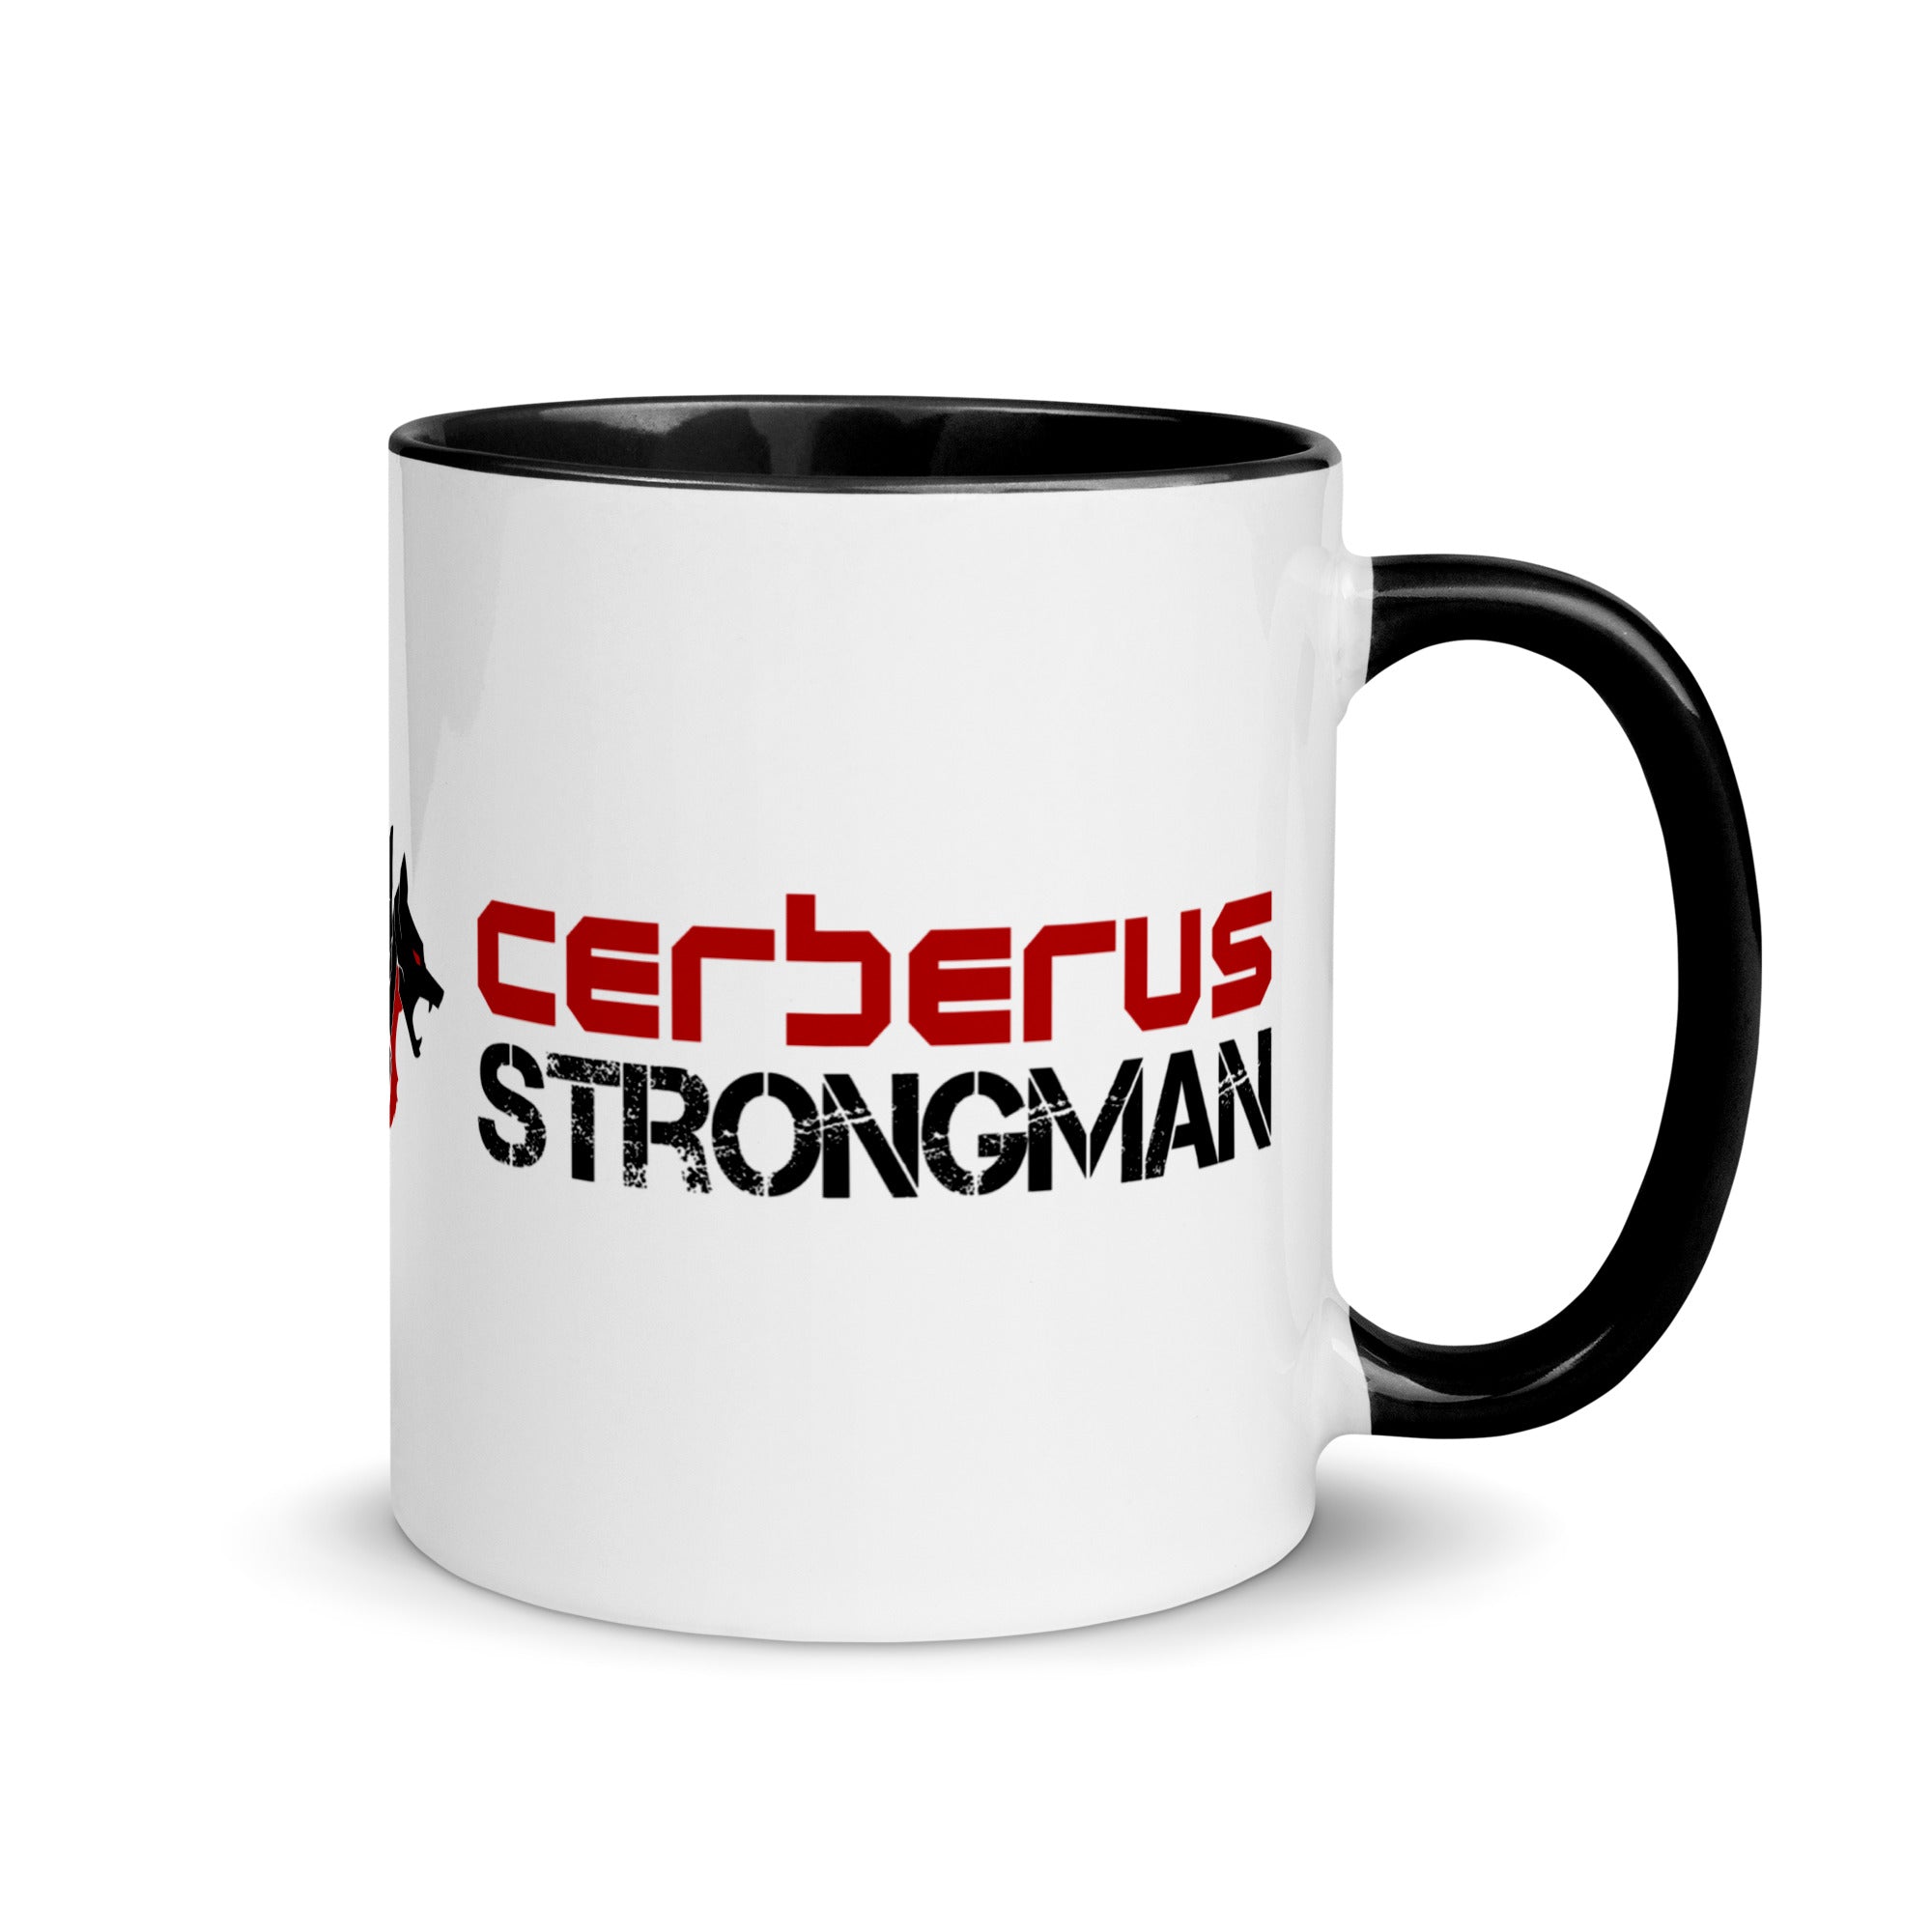 STRONGMAN Mug